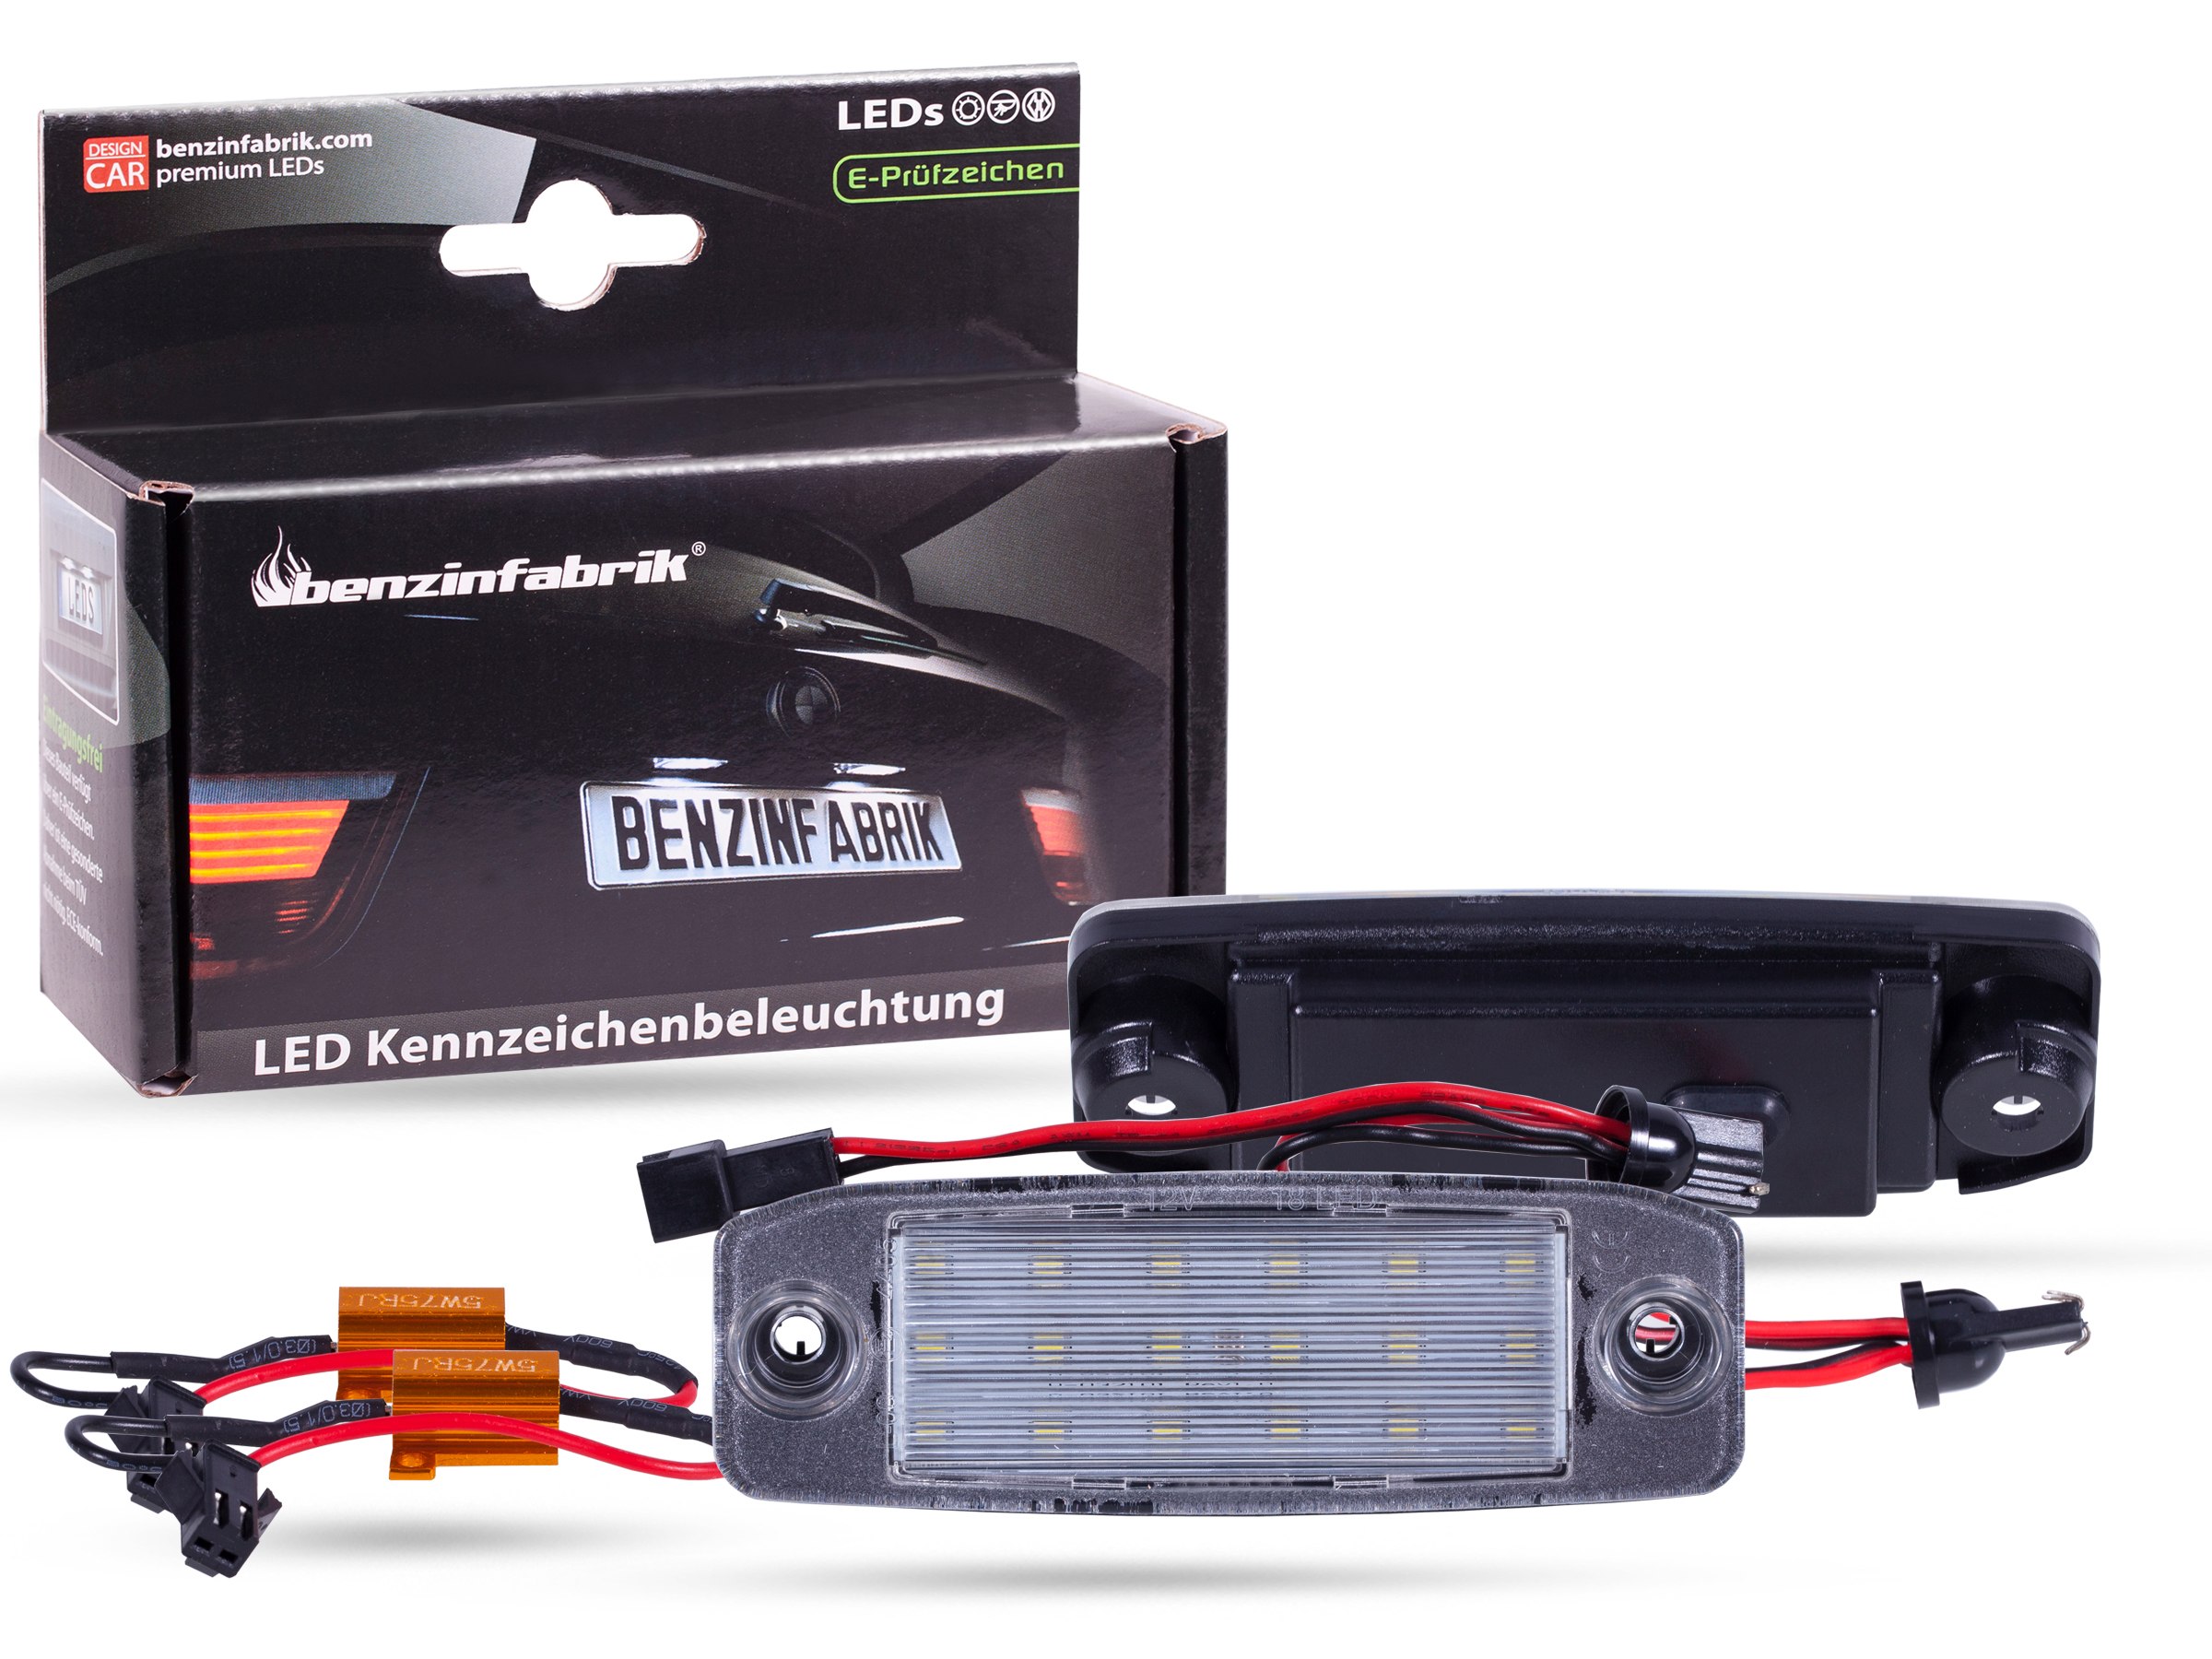 LED Kennzeichenbeleuchtung Module Hyundai Kona, mit E-Prüfzeichen